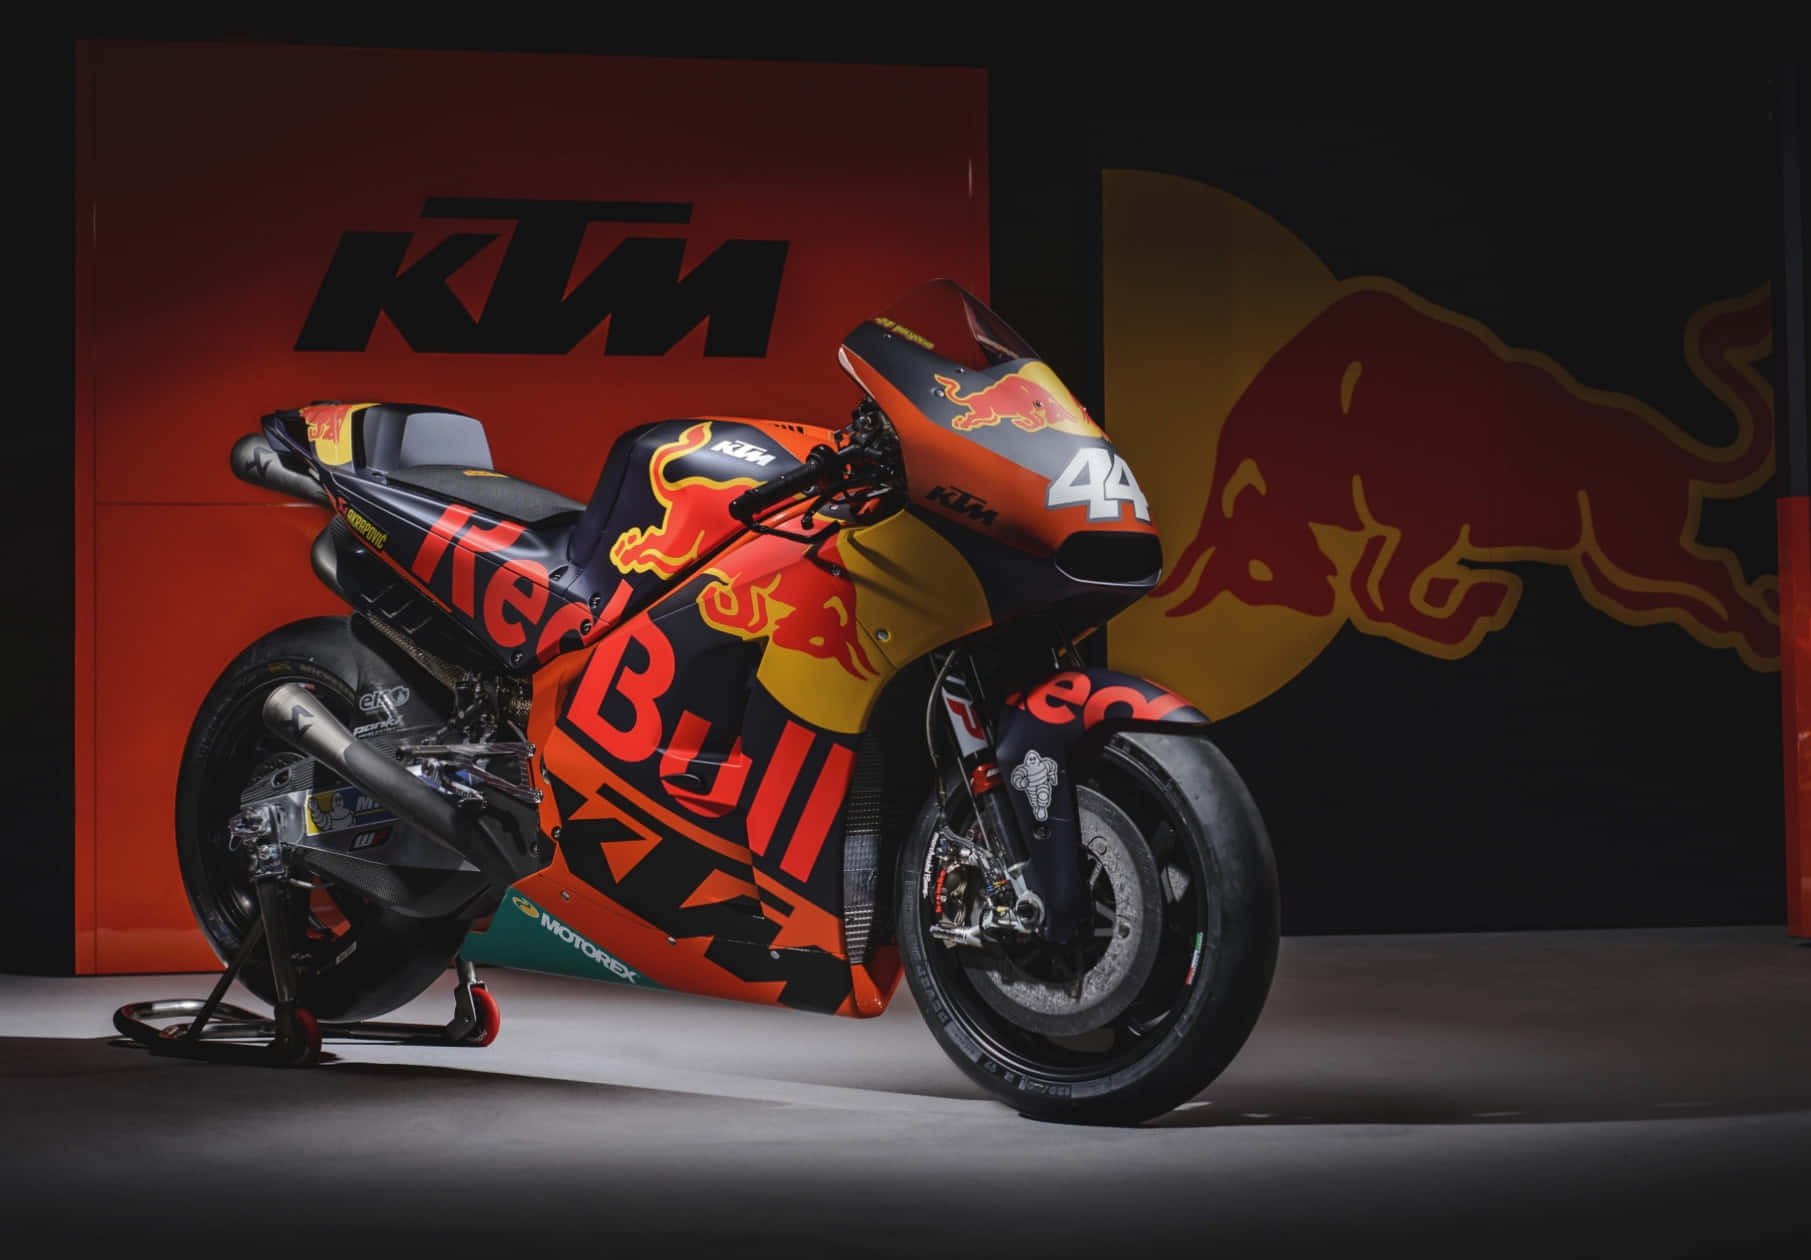 MotoGP Ktm Billeder: Se smukke motorcykel billeder fra MotoGP KTM.